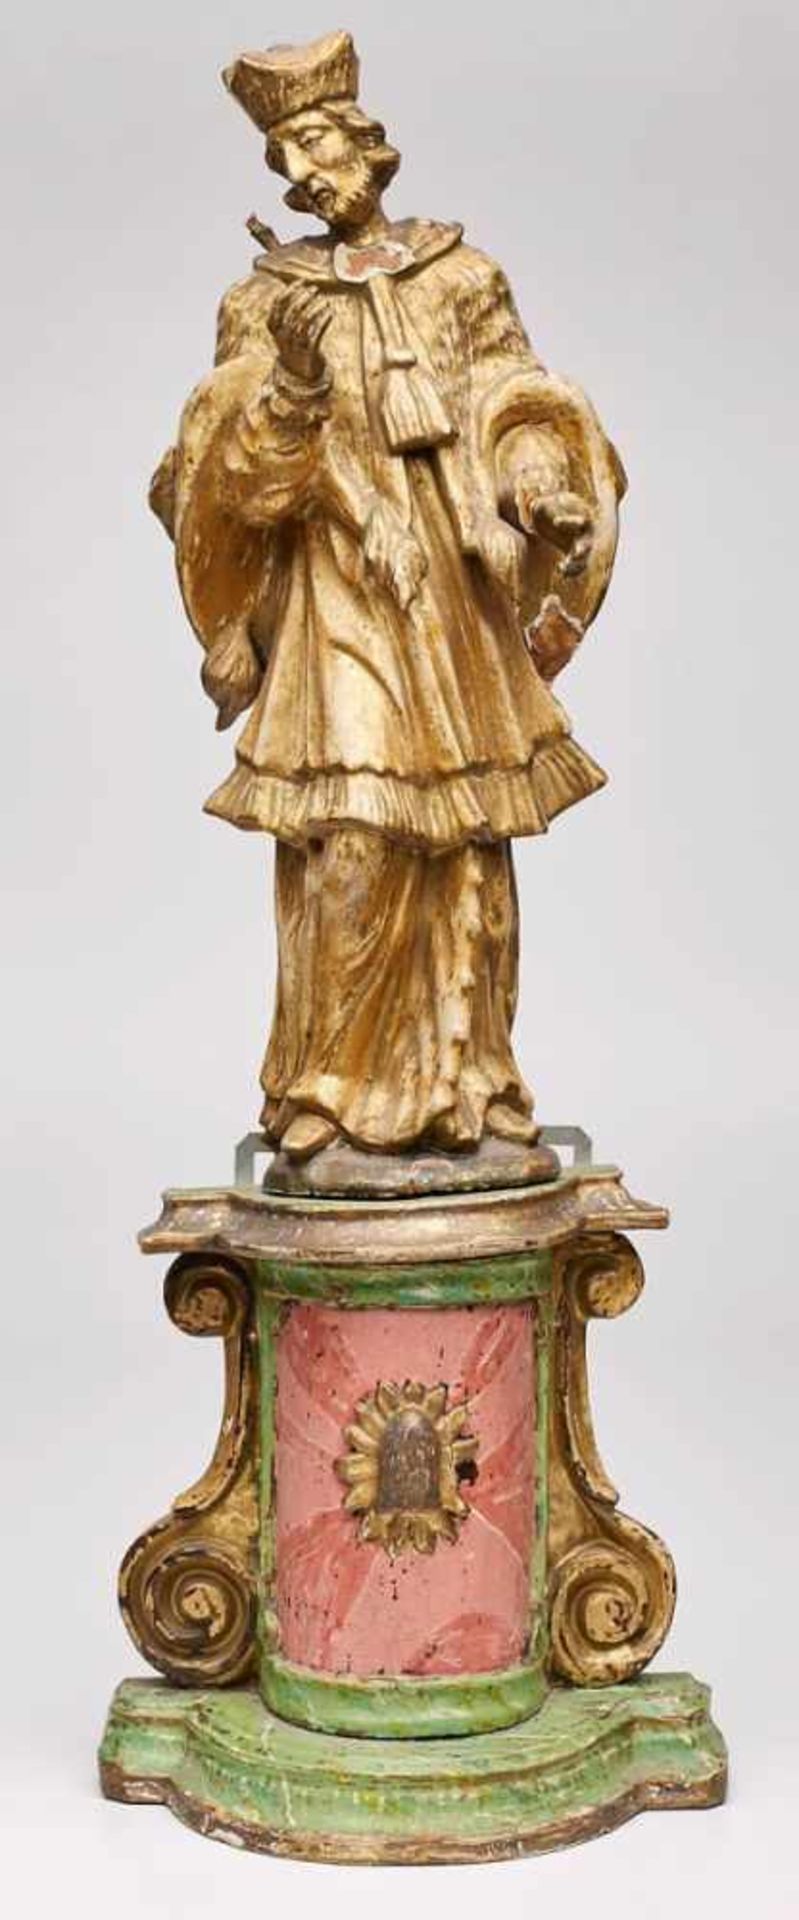 Kl. Barock-Skulptur "Heiliger Nepomuk" aufKonsole, 18. Jh. Weichholz. Skulptur vollrd. geschnitzt u.